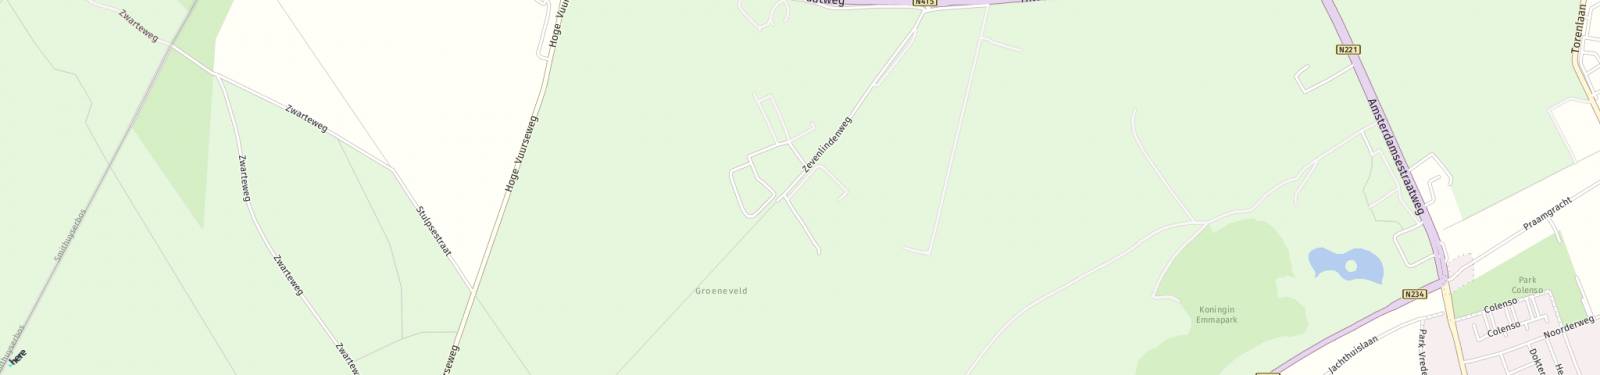 Kaart met locatie Bungalow Zevenlindenweg